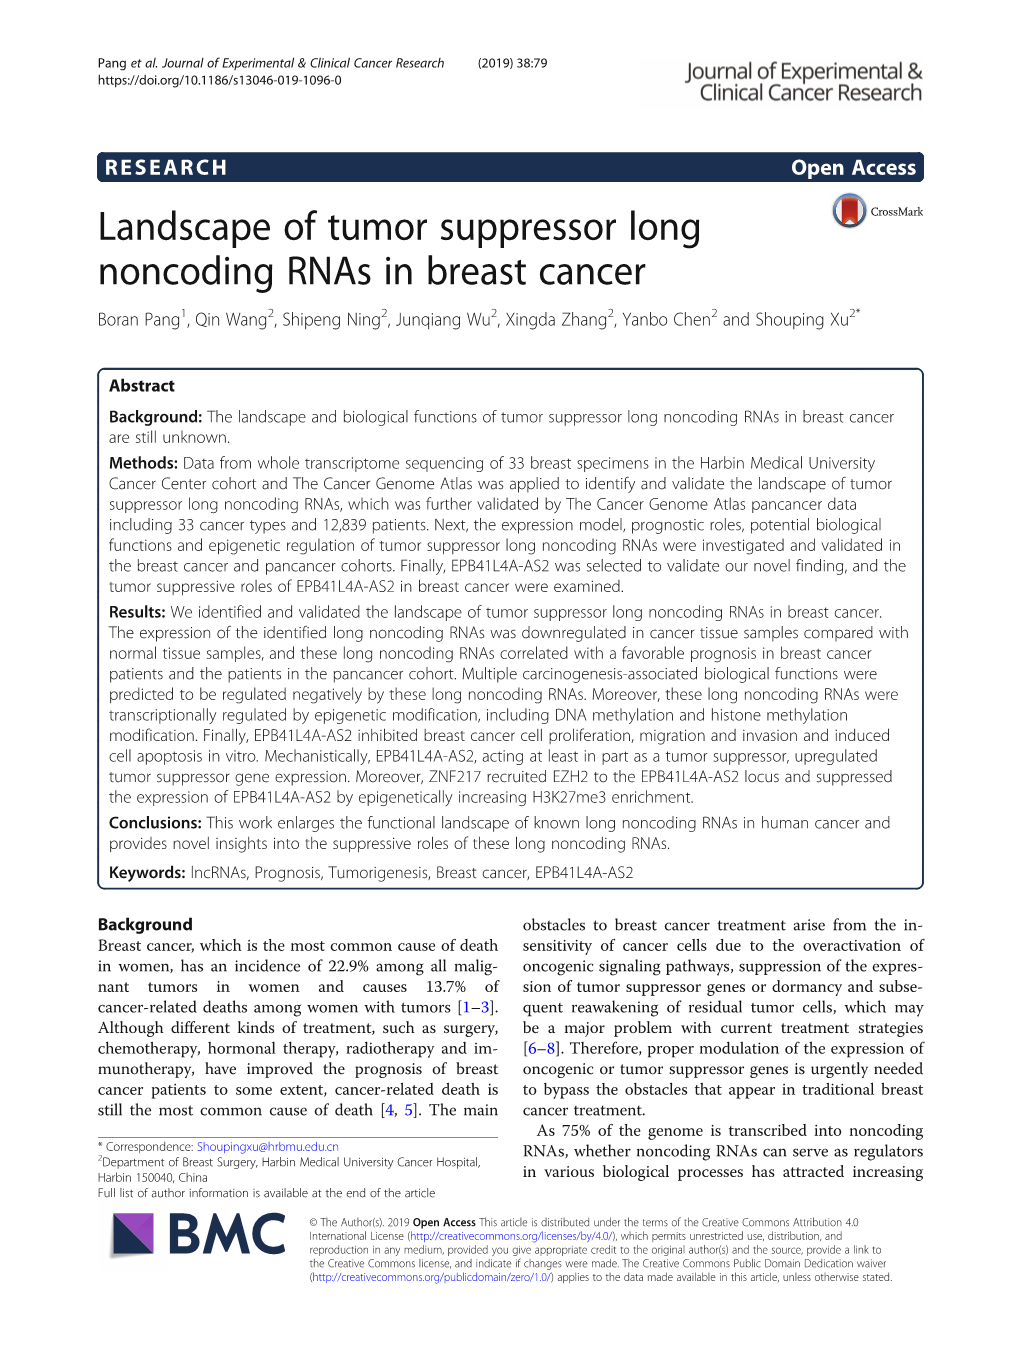 Landscape of Tumor Suppressor Long Noncoding Rnas in Breast Cancer Boran Pang1, Qin Wang2, Shipeng Ning2, Junqiang Wu2, Xingda Zhang2, Yanbo Chen2 and Shouping Xu2*